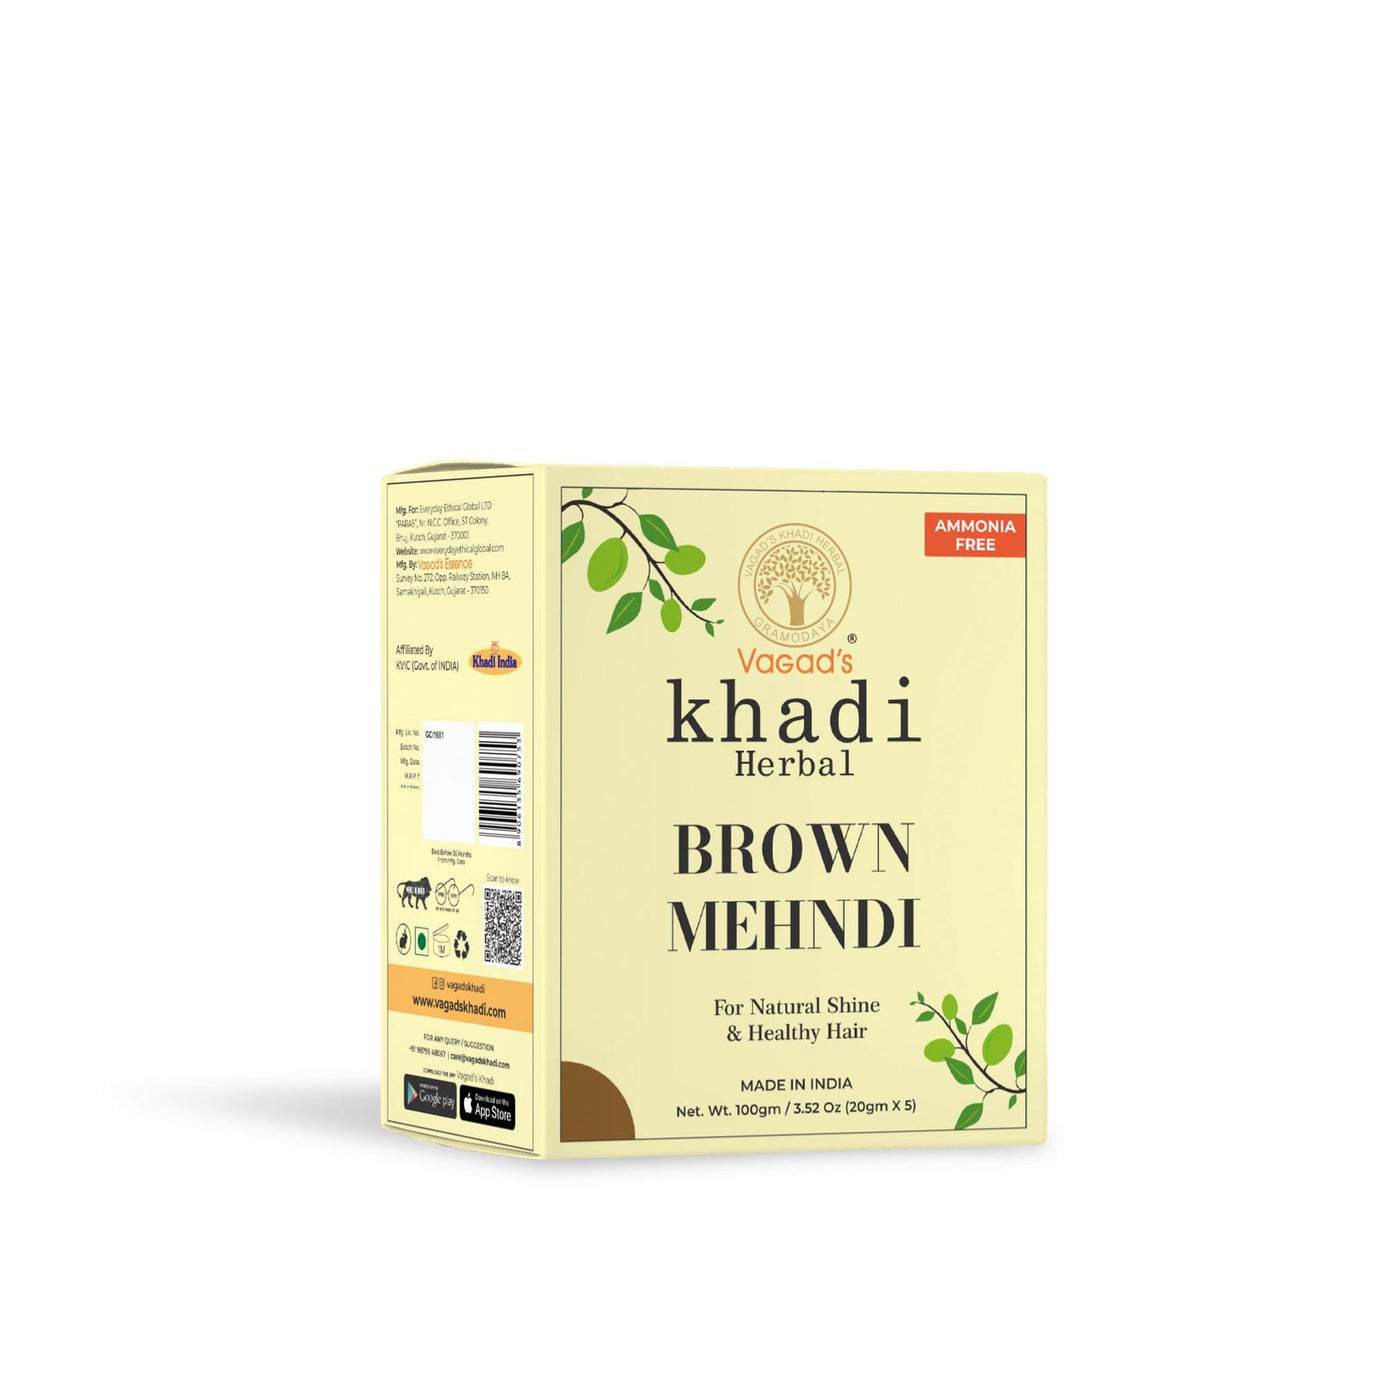 Vagad's Khadi Brown Mehndi (Pack of 3)